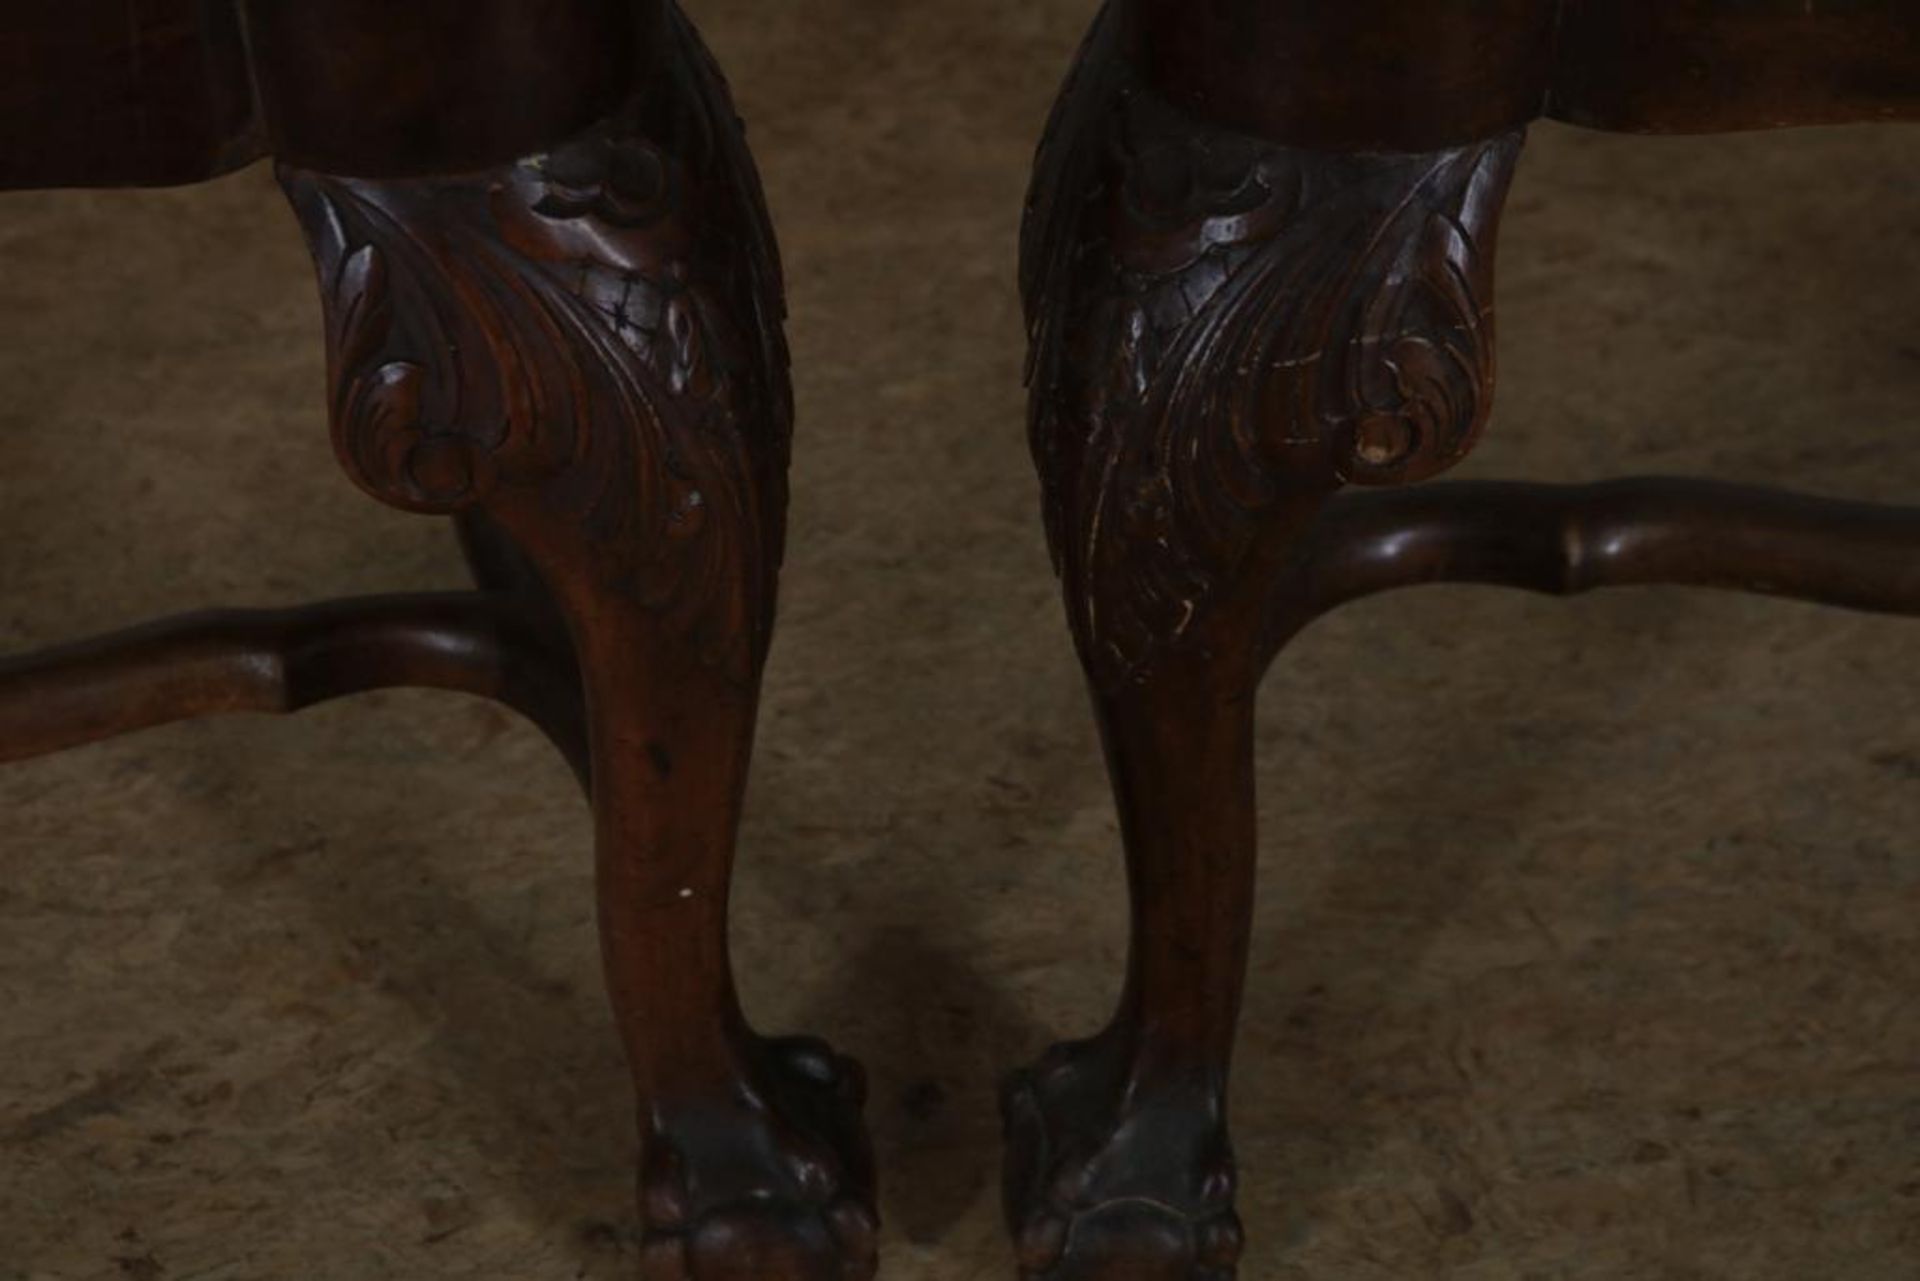 Serie van 5 noten Chippendale-stijl stoelen, w.o. 1 armstoel met schelpmotieven en tijgerprint - Bild 4 aus 4